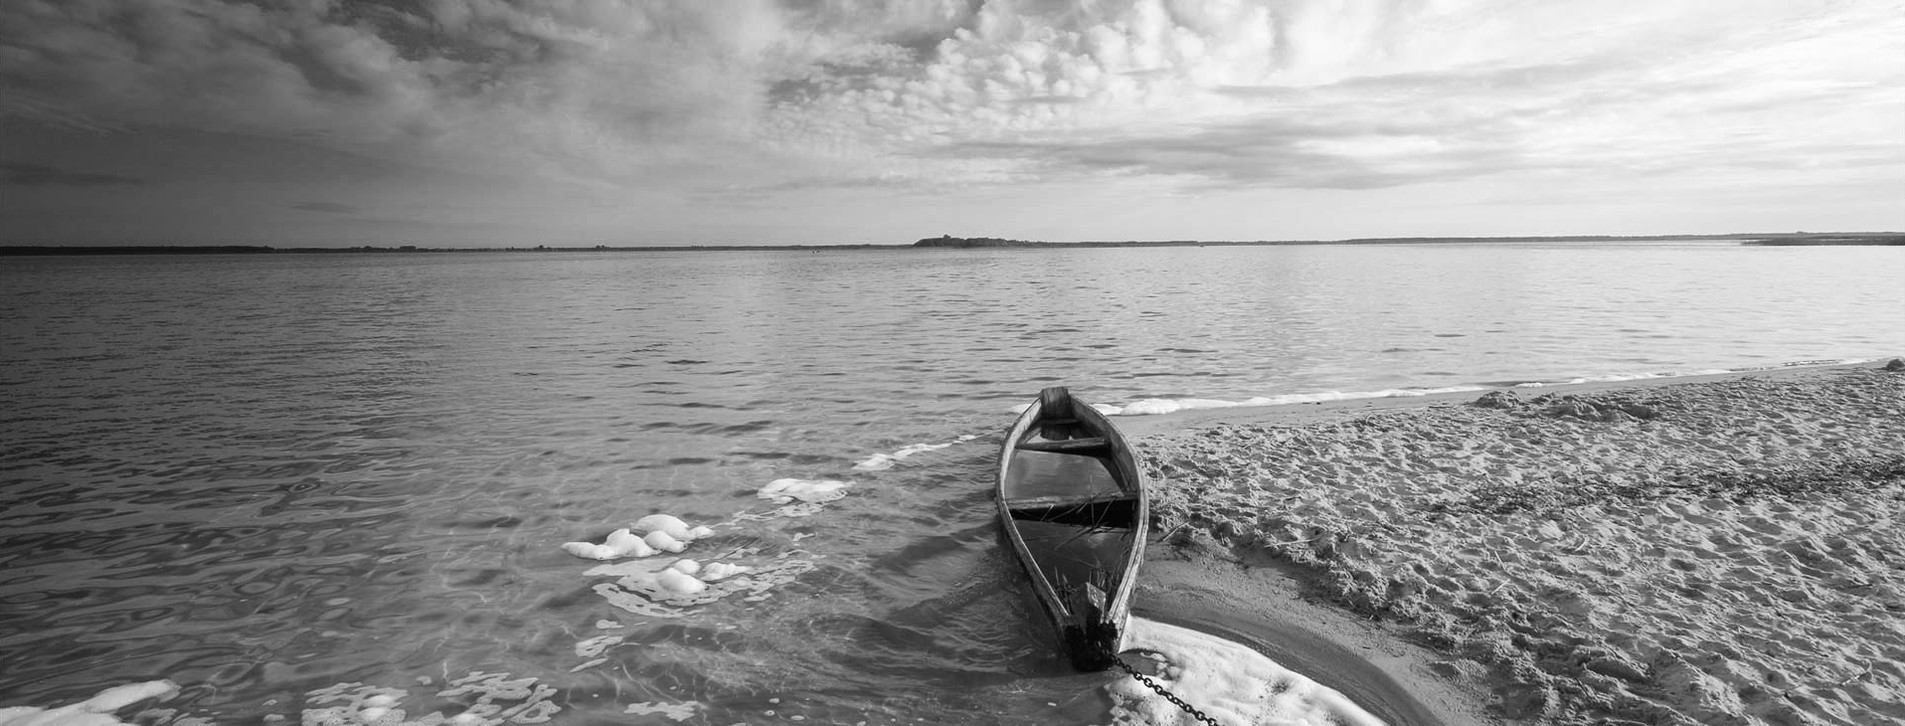 Фото 1 - Вікенд на Шацьких озерах